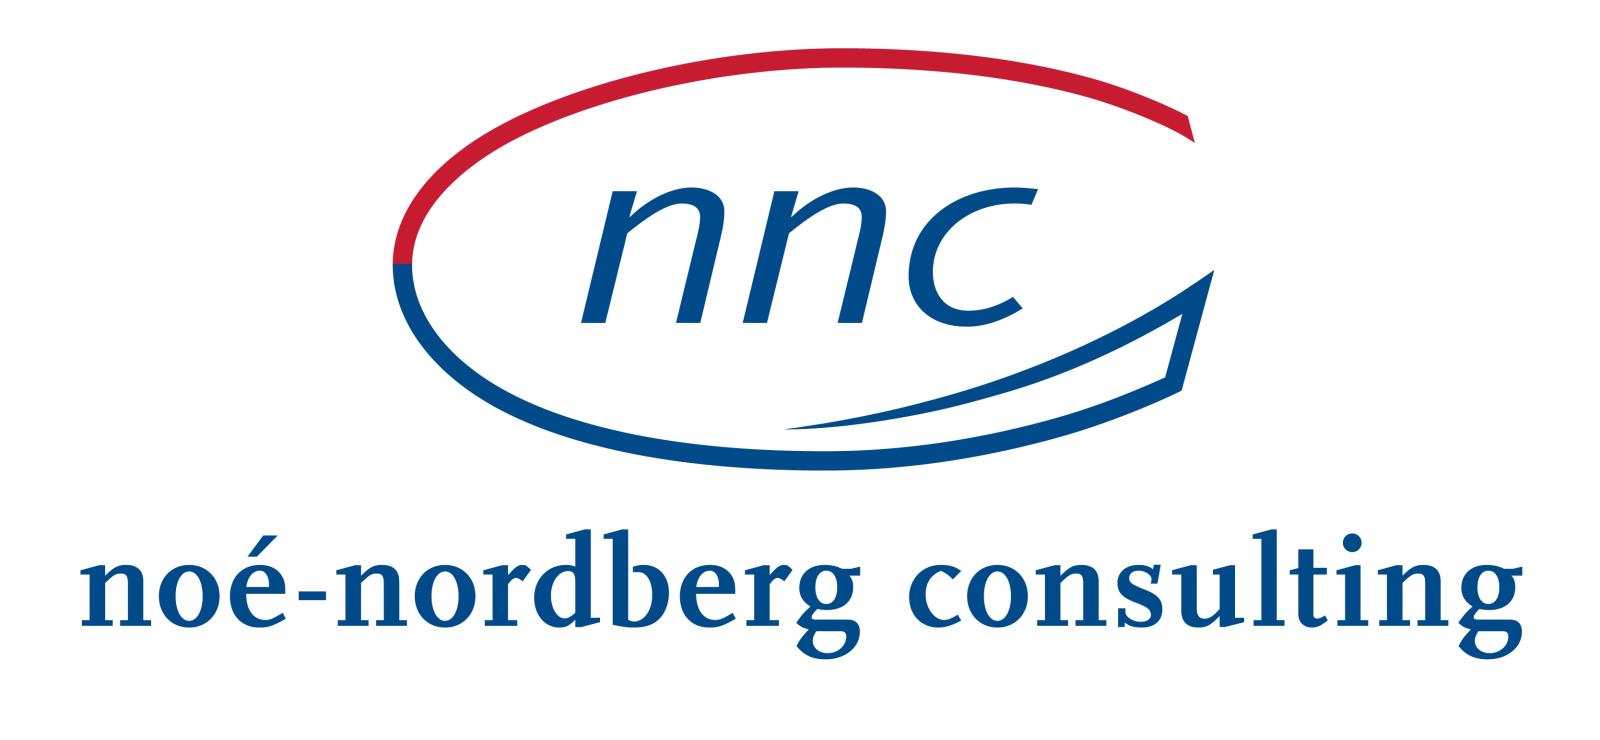 nnc noé-nordberg consulting                             Gemeinsam Horizonte erweitern!